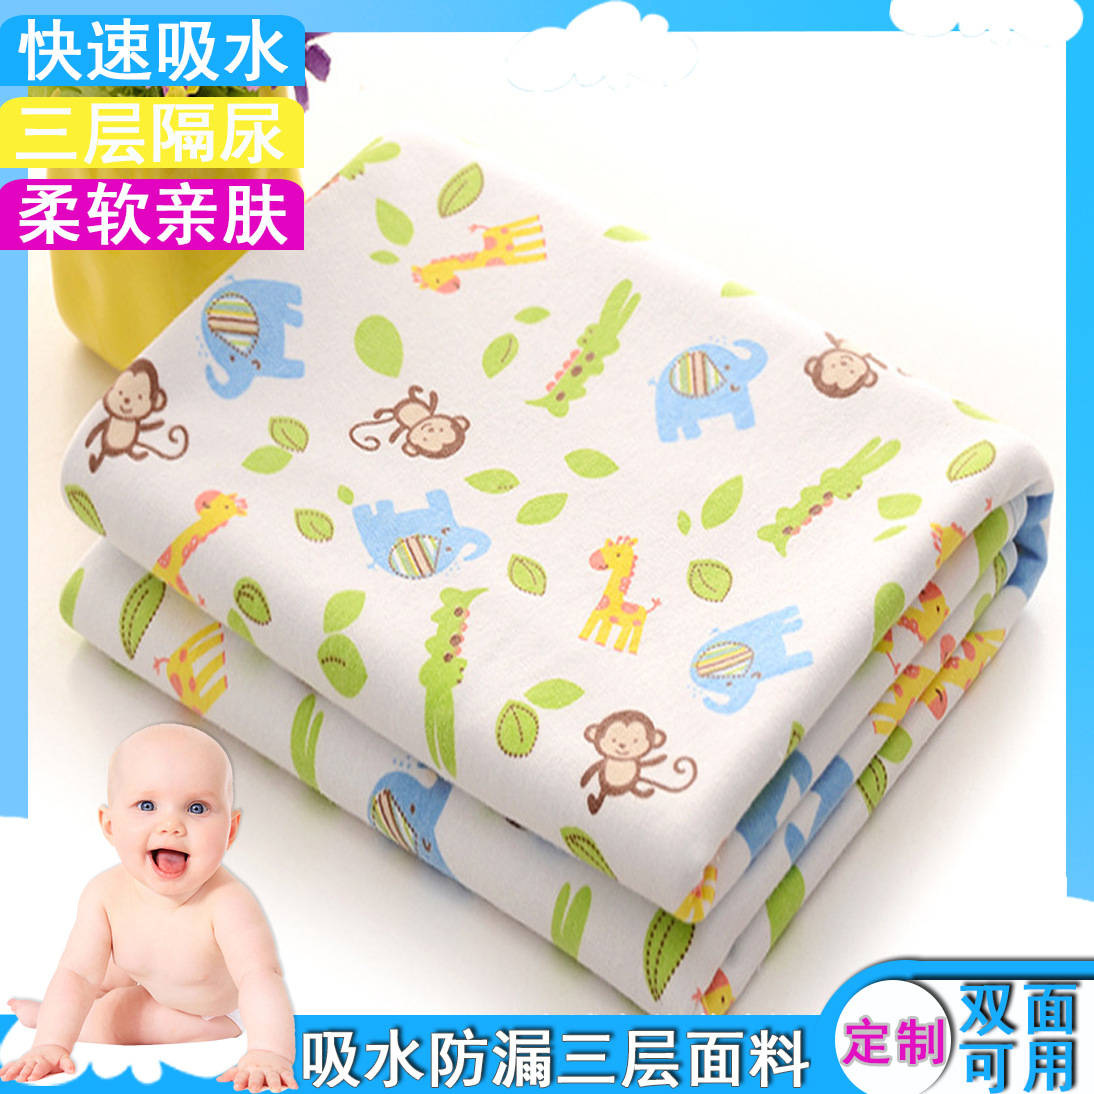 针织纯棉婴儿隔尿垫防水透气可洗 新生儿尿垫大码防漏宝宝尿布垫-阿里巴巴